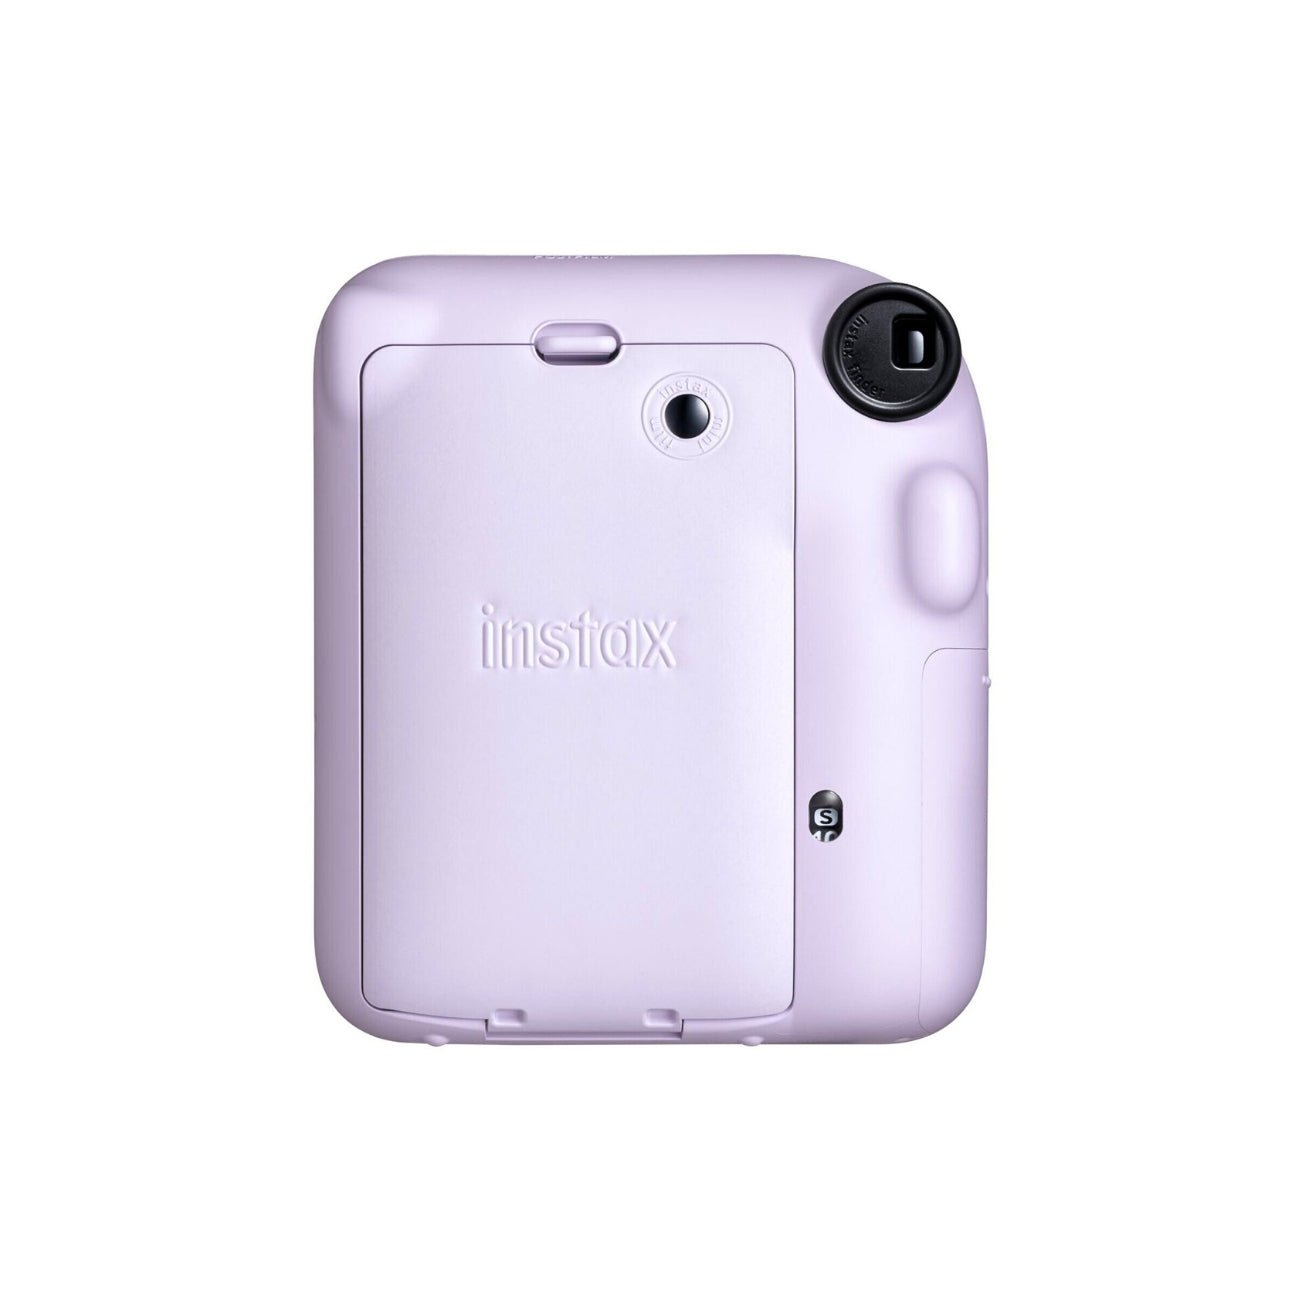 Fujifilm INSTAX Mini 12 Instant Film Camera (Lilac Purple)